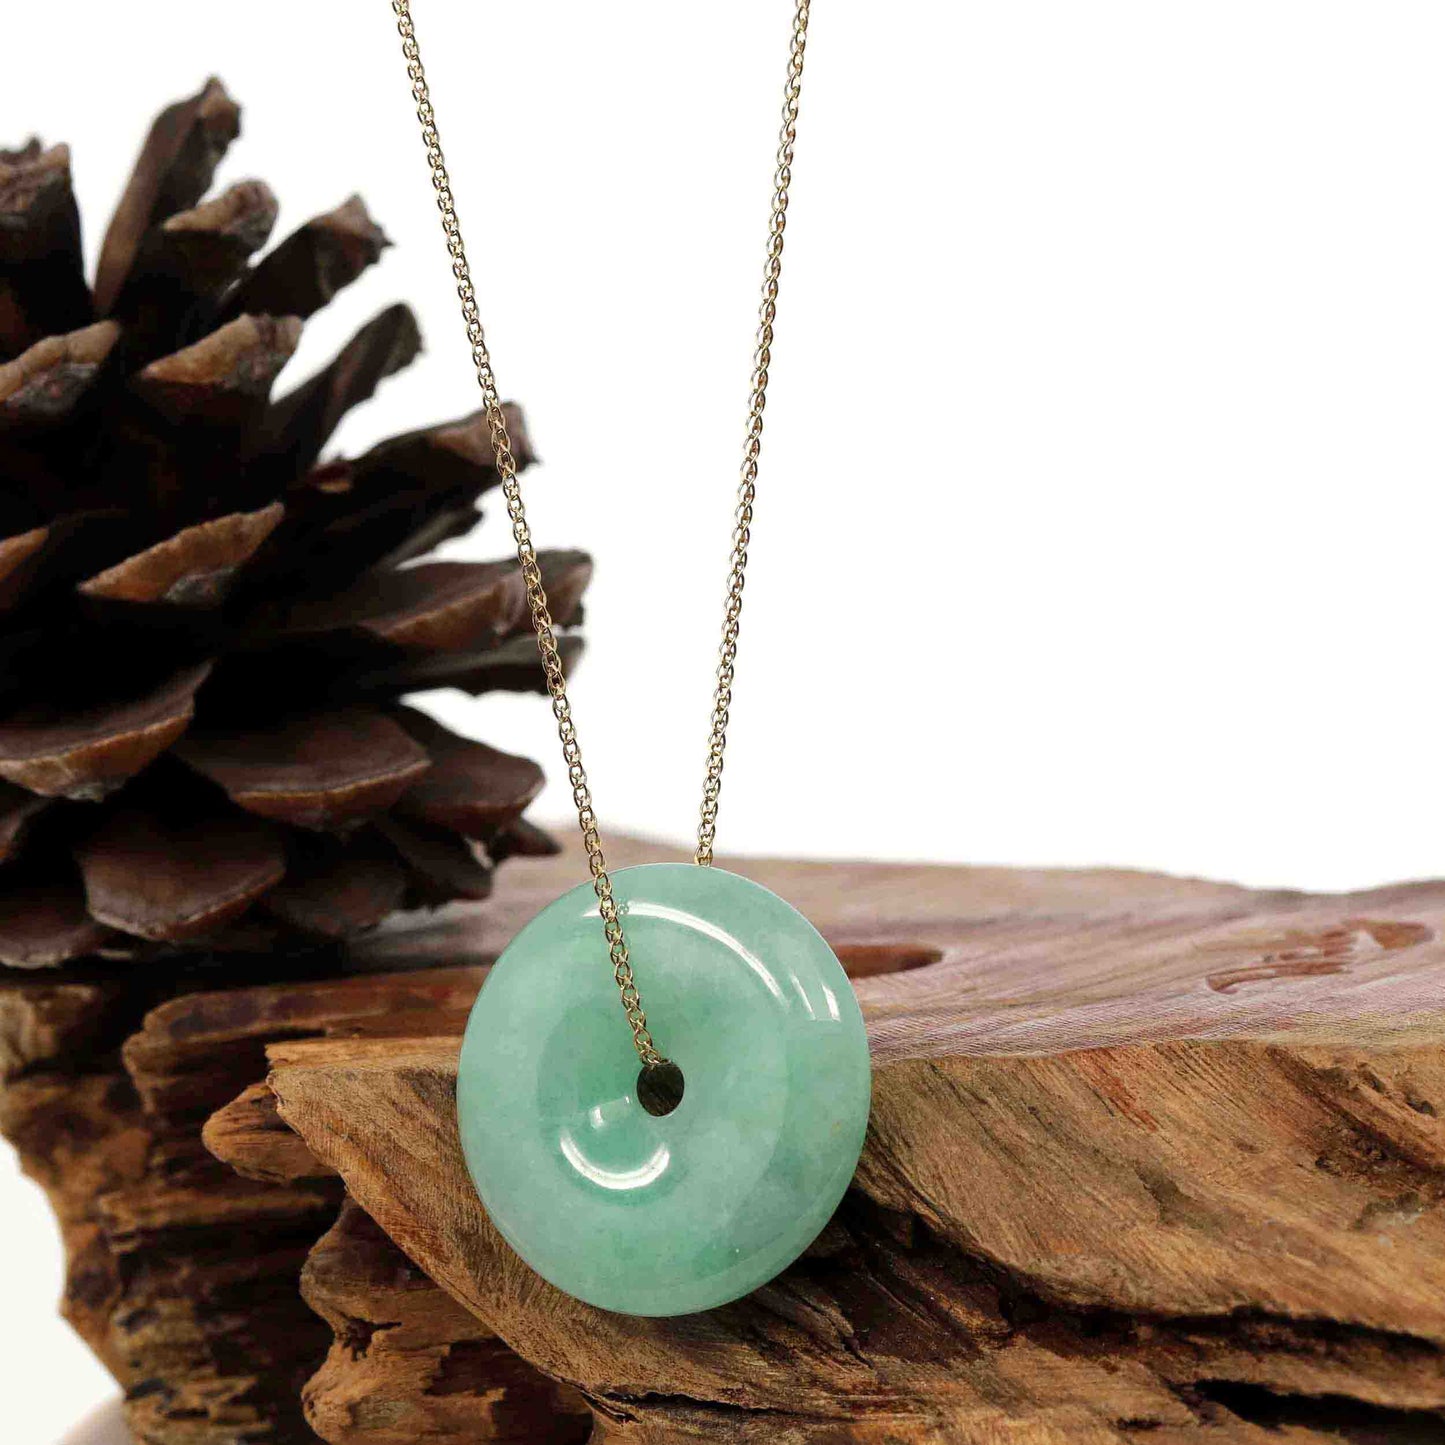 RealJade® Co. Jade Pendant Necklace Baikalla "Good Luck Button" Necklace Green Jadeite Jade Lucky Ping An Kou Pendant